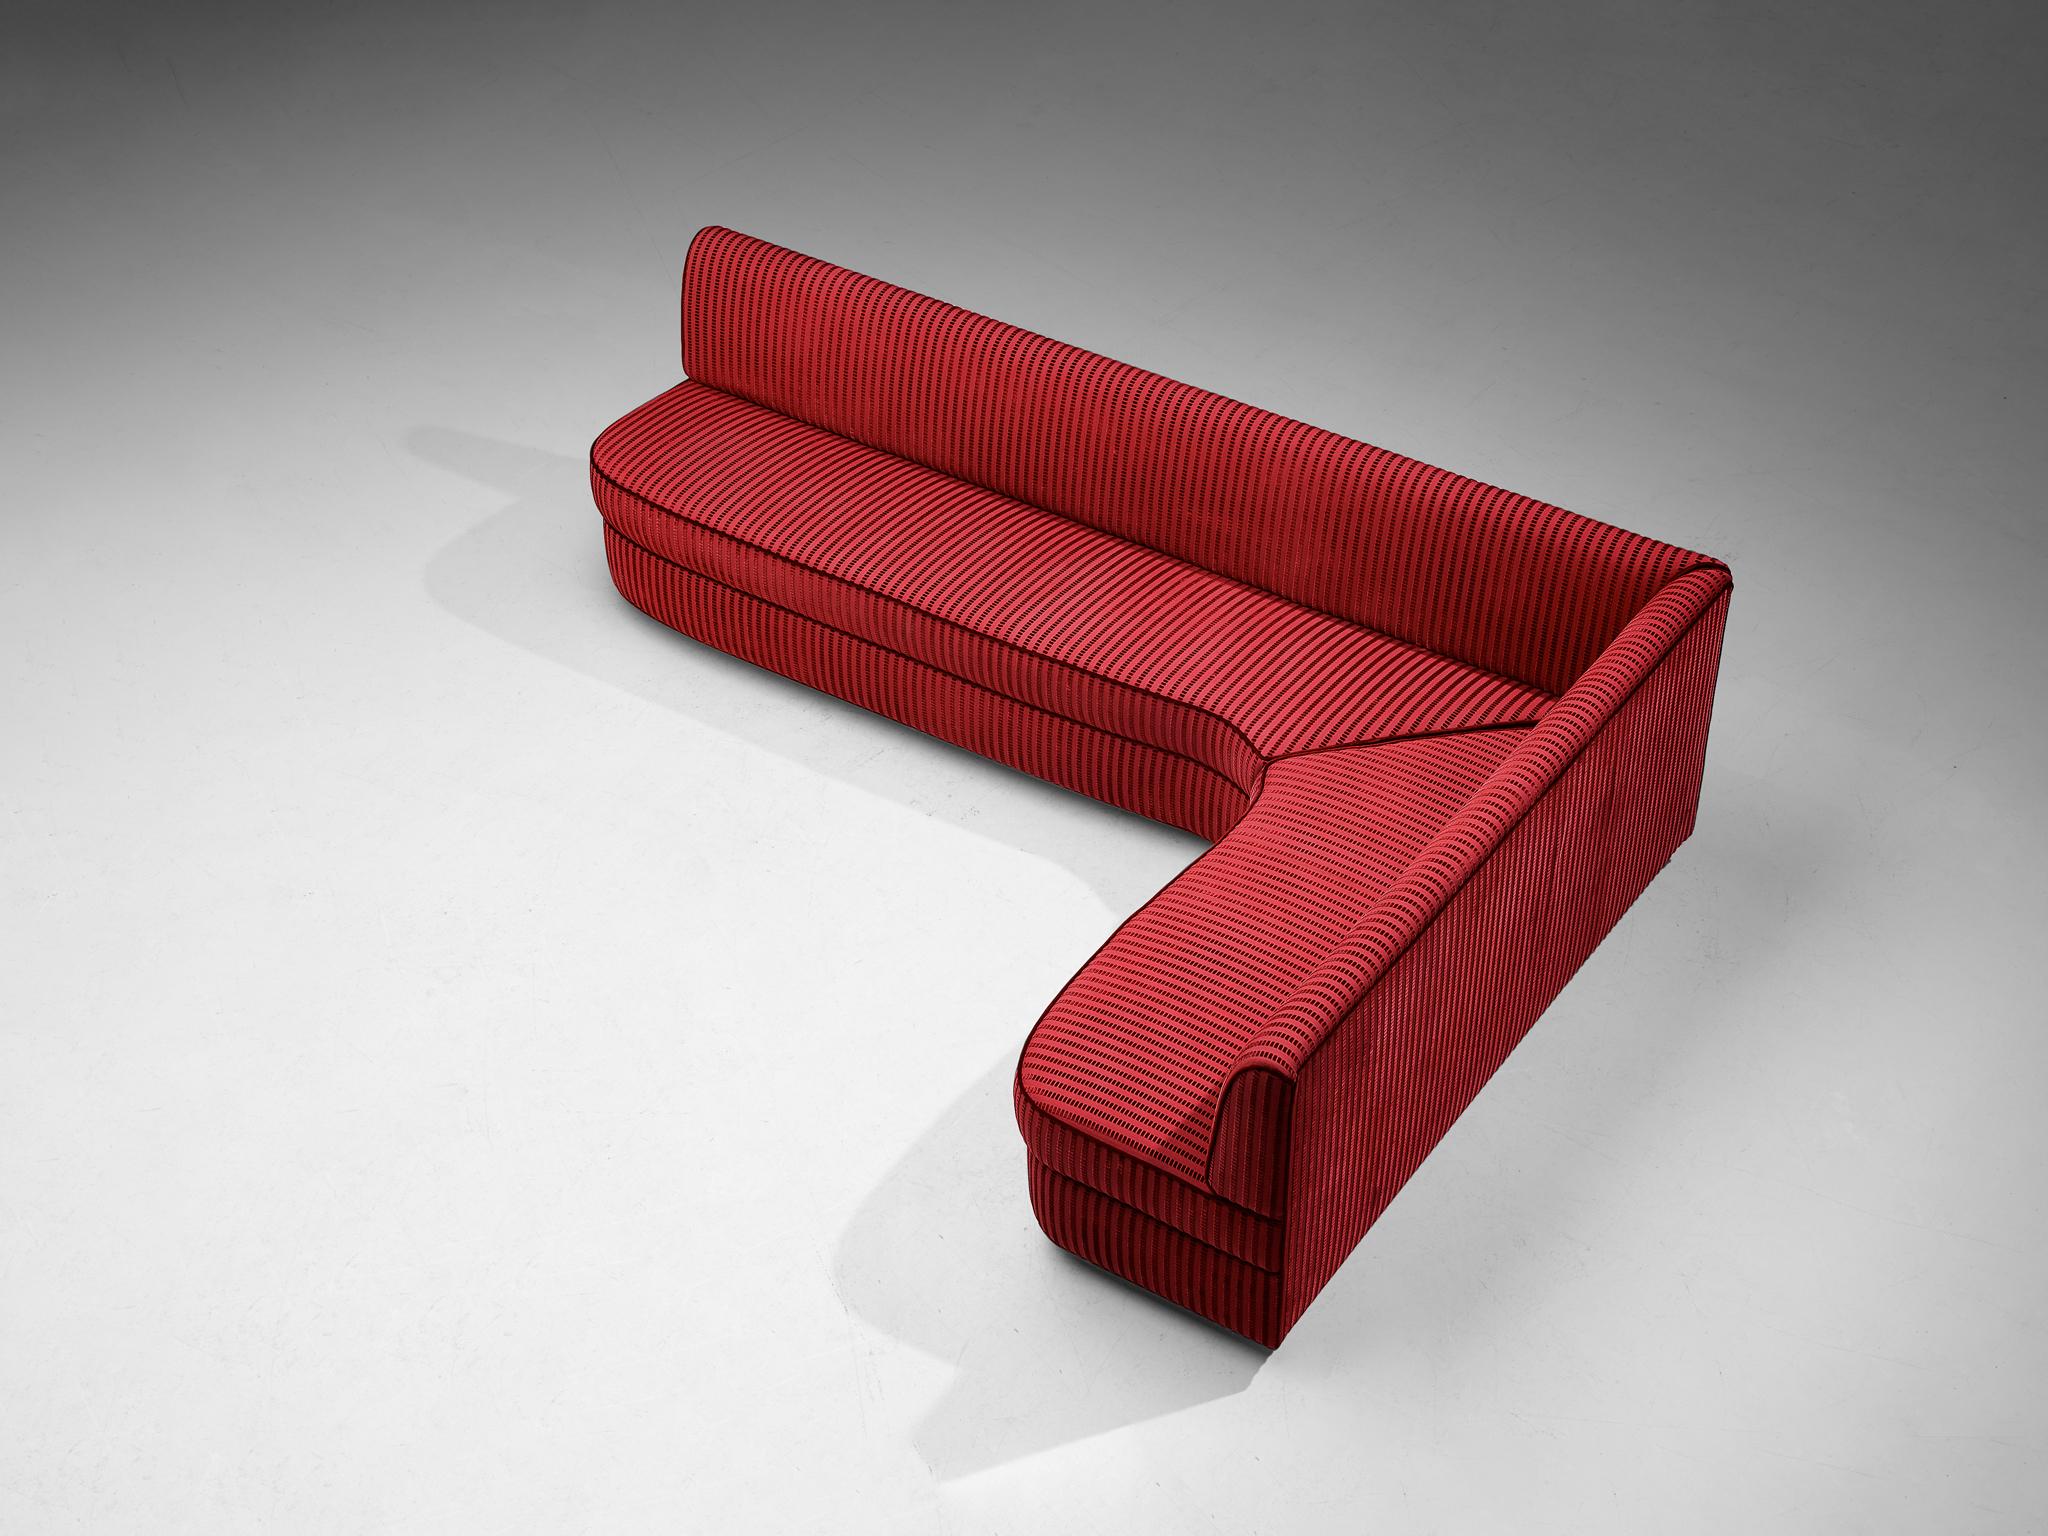 Canapé d'angle, tissu, velours, bois laqué, Italie, années 1950

Ce canapé d'origine italienne a un aspect confortable et se caractérise par une construction splendide. Le corps est tapissé d'un tissu rouge orné de rayures de velours qui dominent la